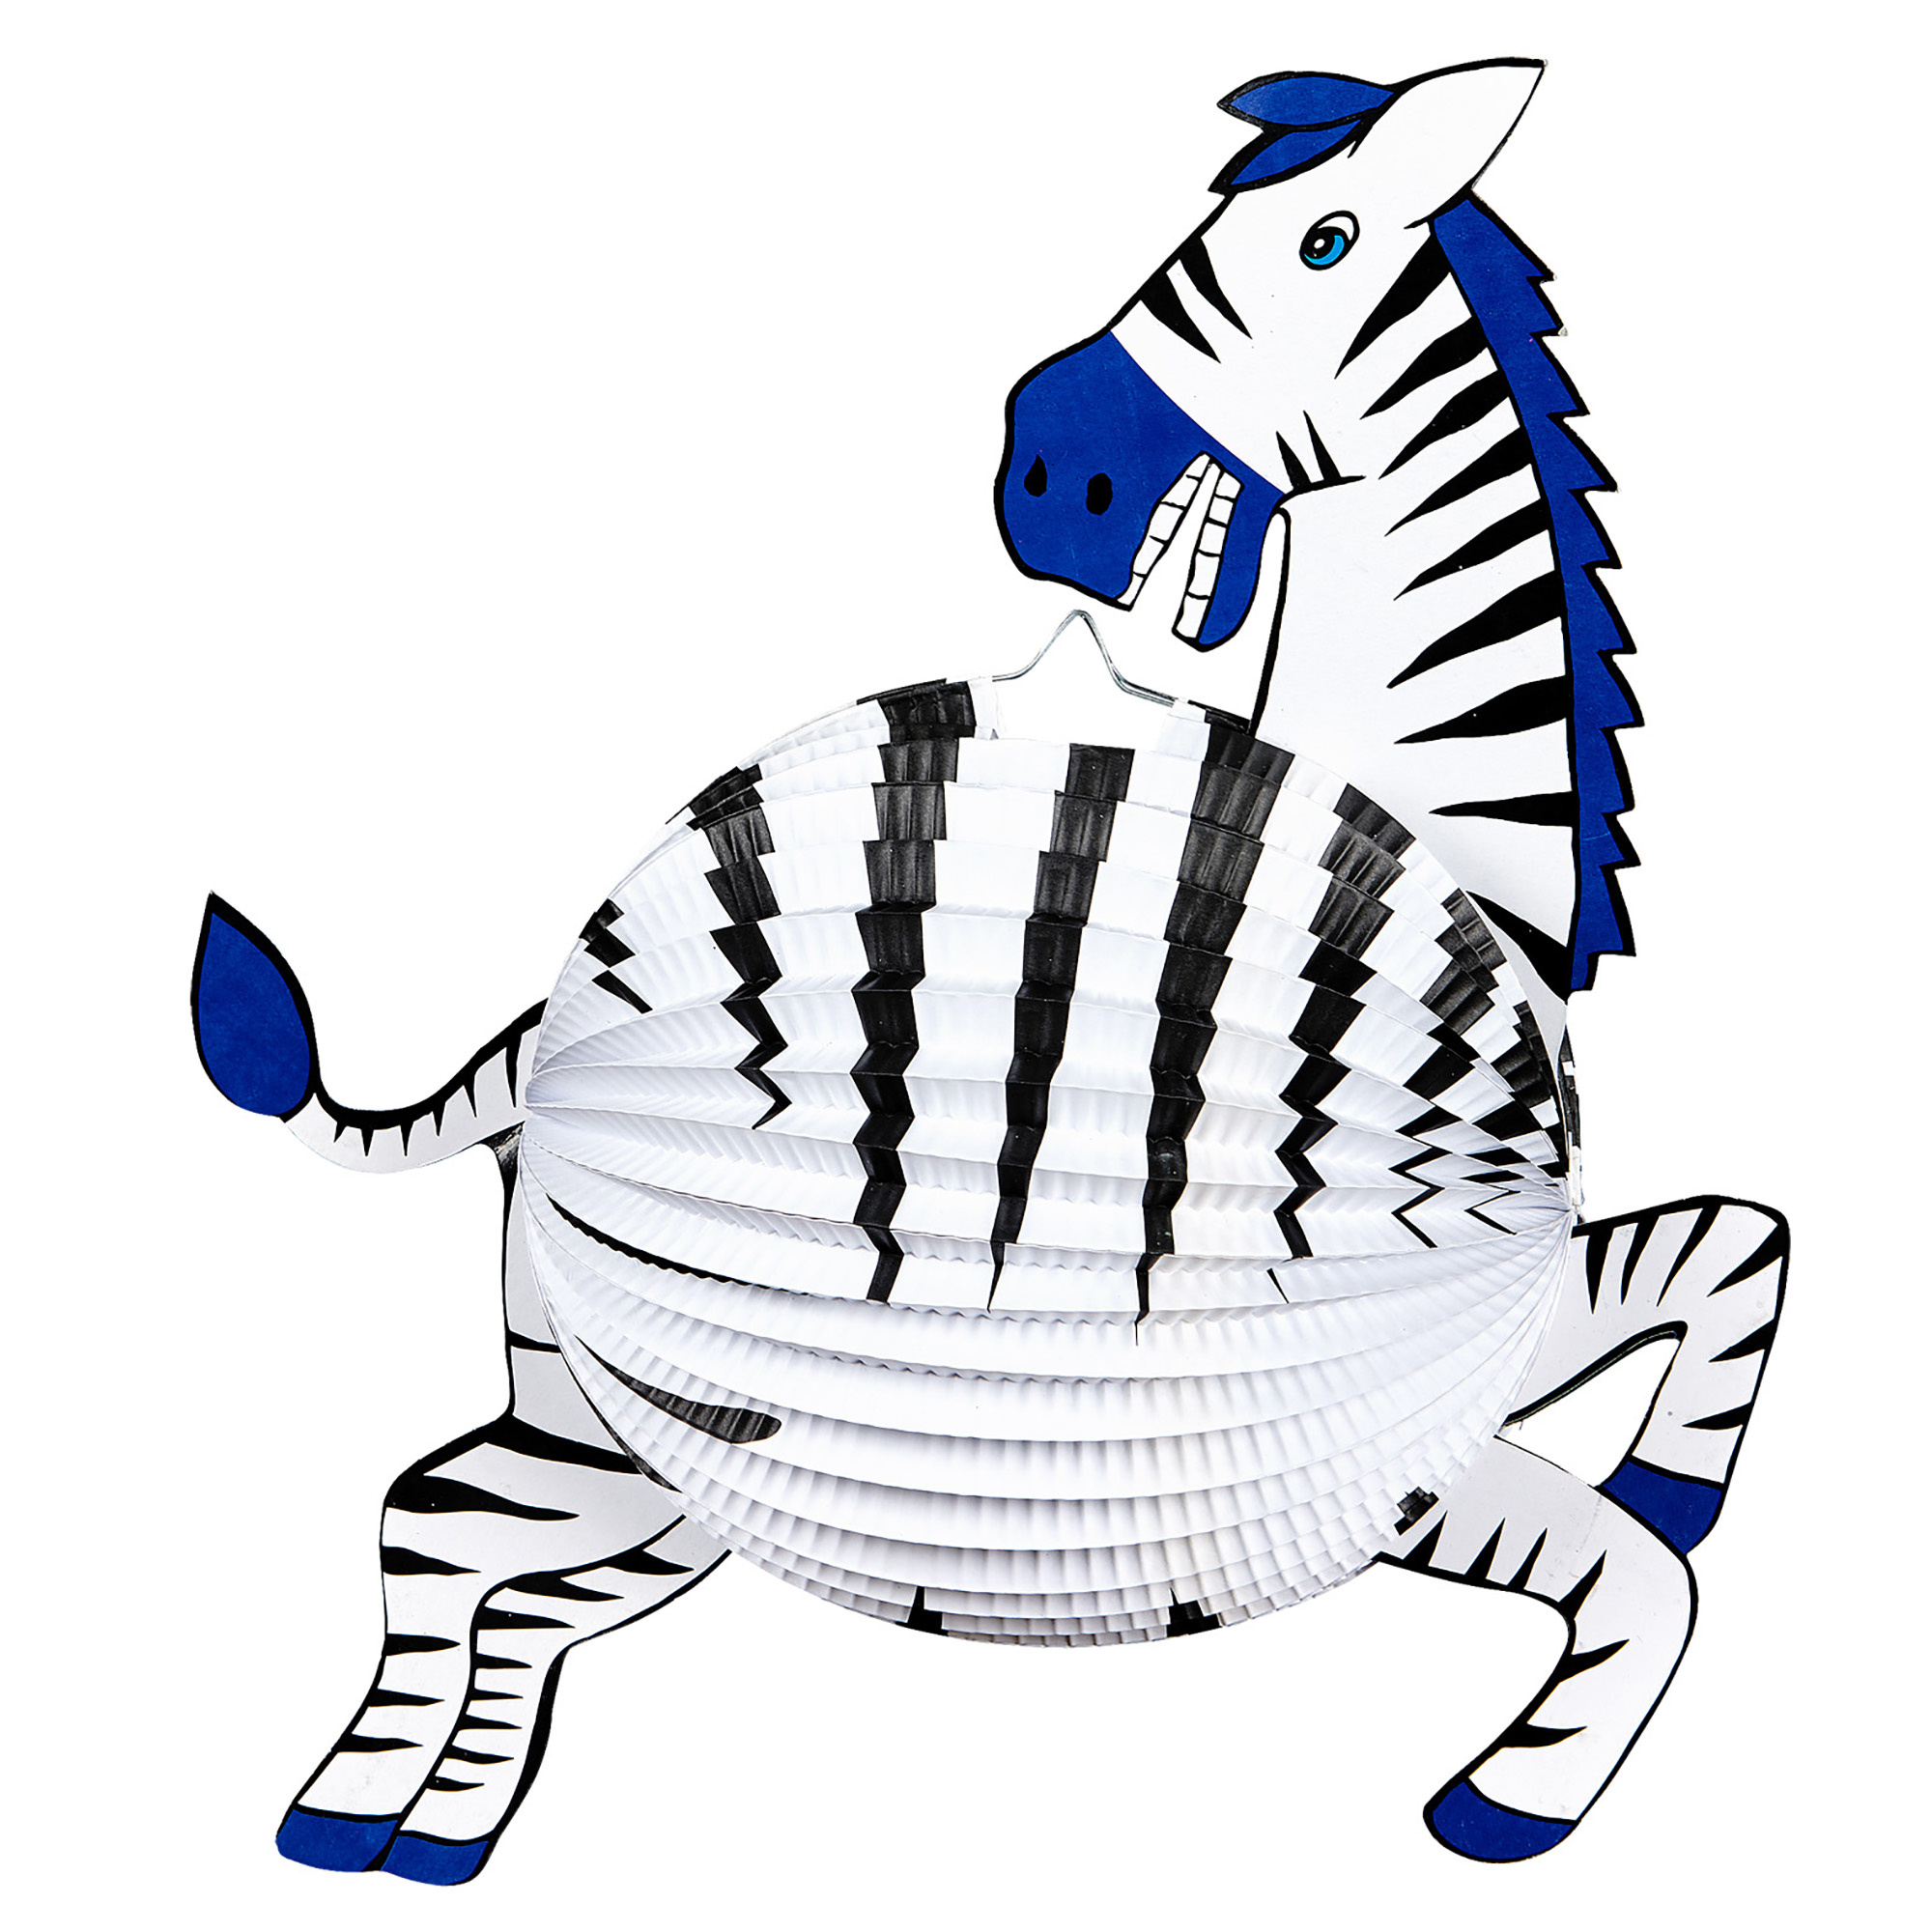 Zebra lampion decoratie van papier